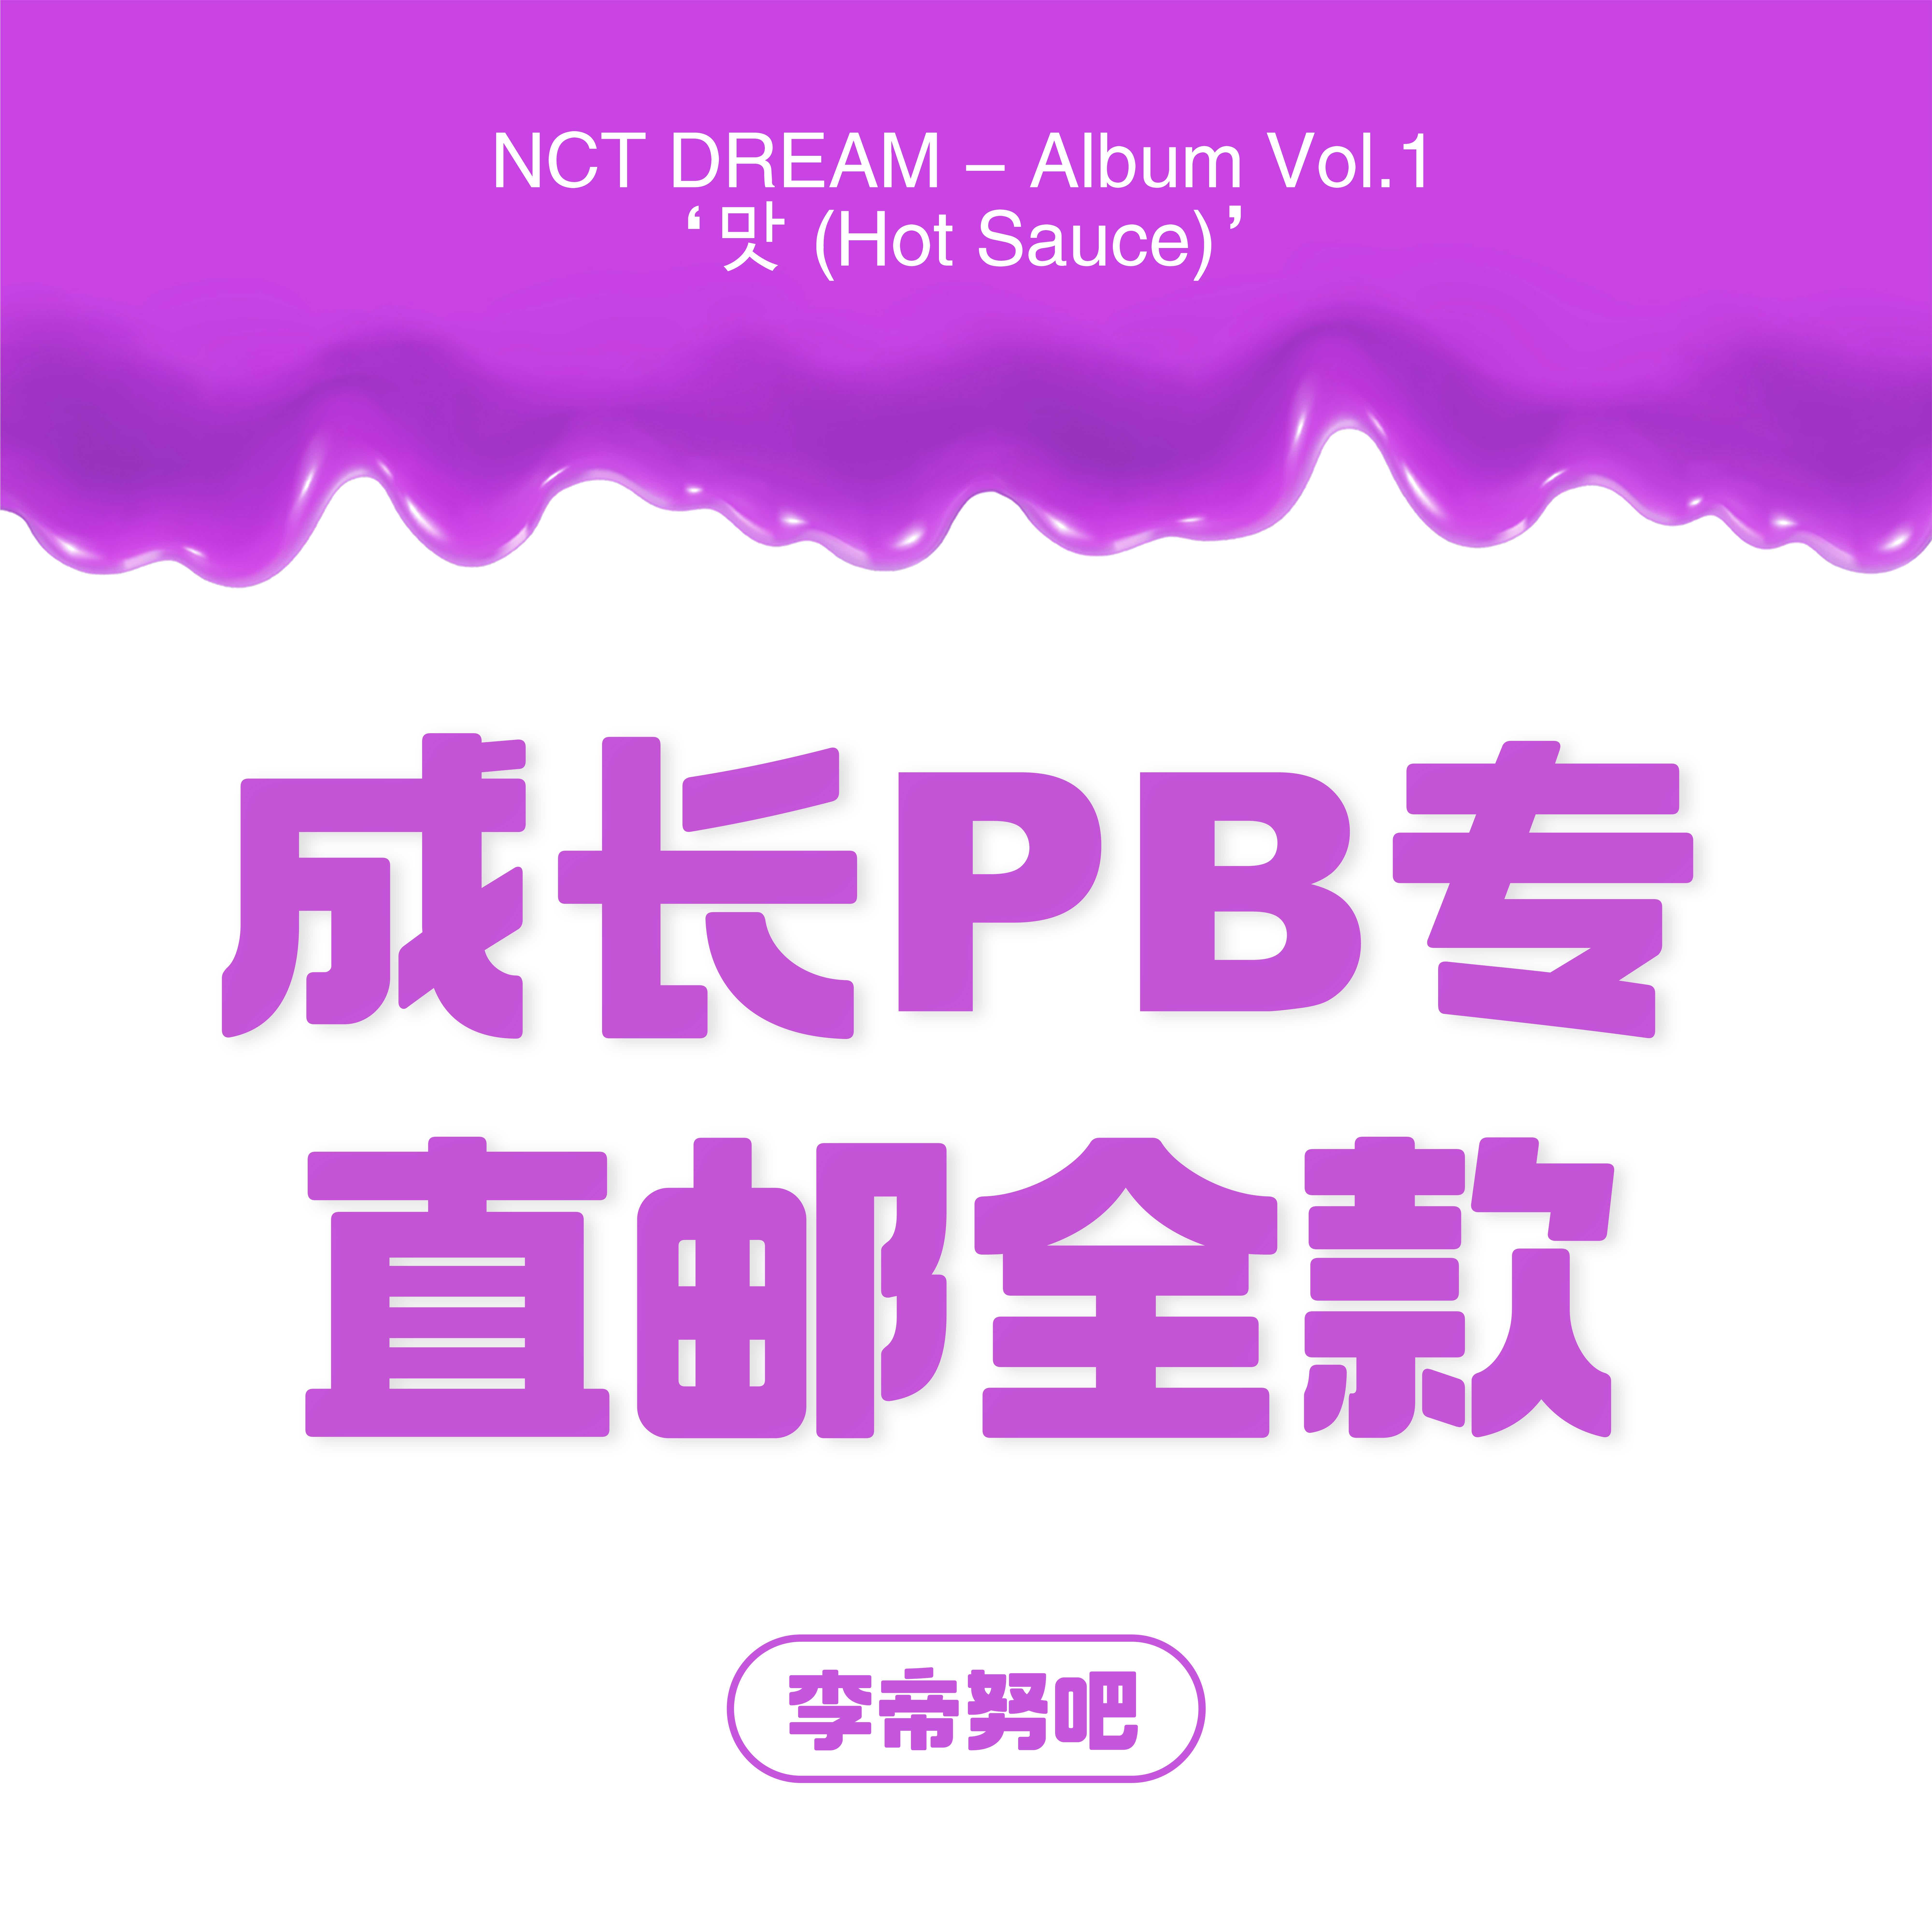 [全款 Photo Book专运回] NCT DREAM - Album Vol.1 [맛 (Hot Sauce)] (写真集版本) (随机版本) (*购买2张或以上是会提供不同版本)- 李帝努吧_JenoBar